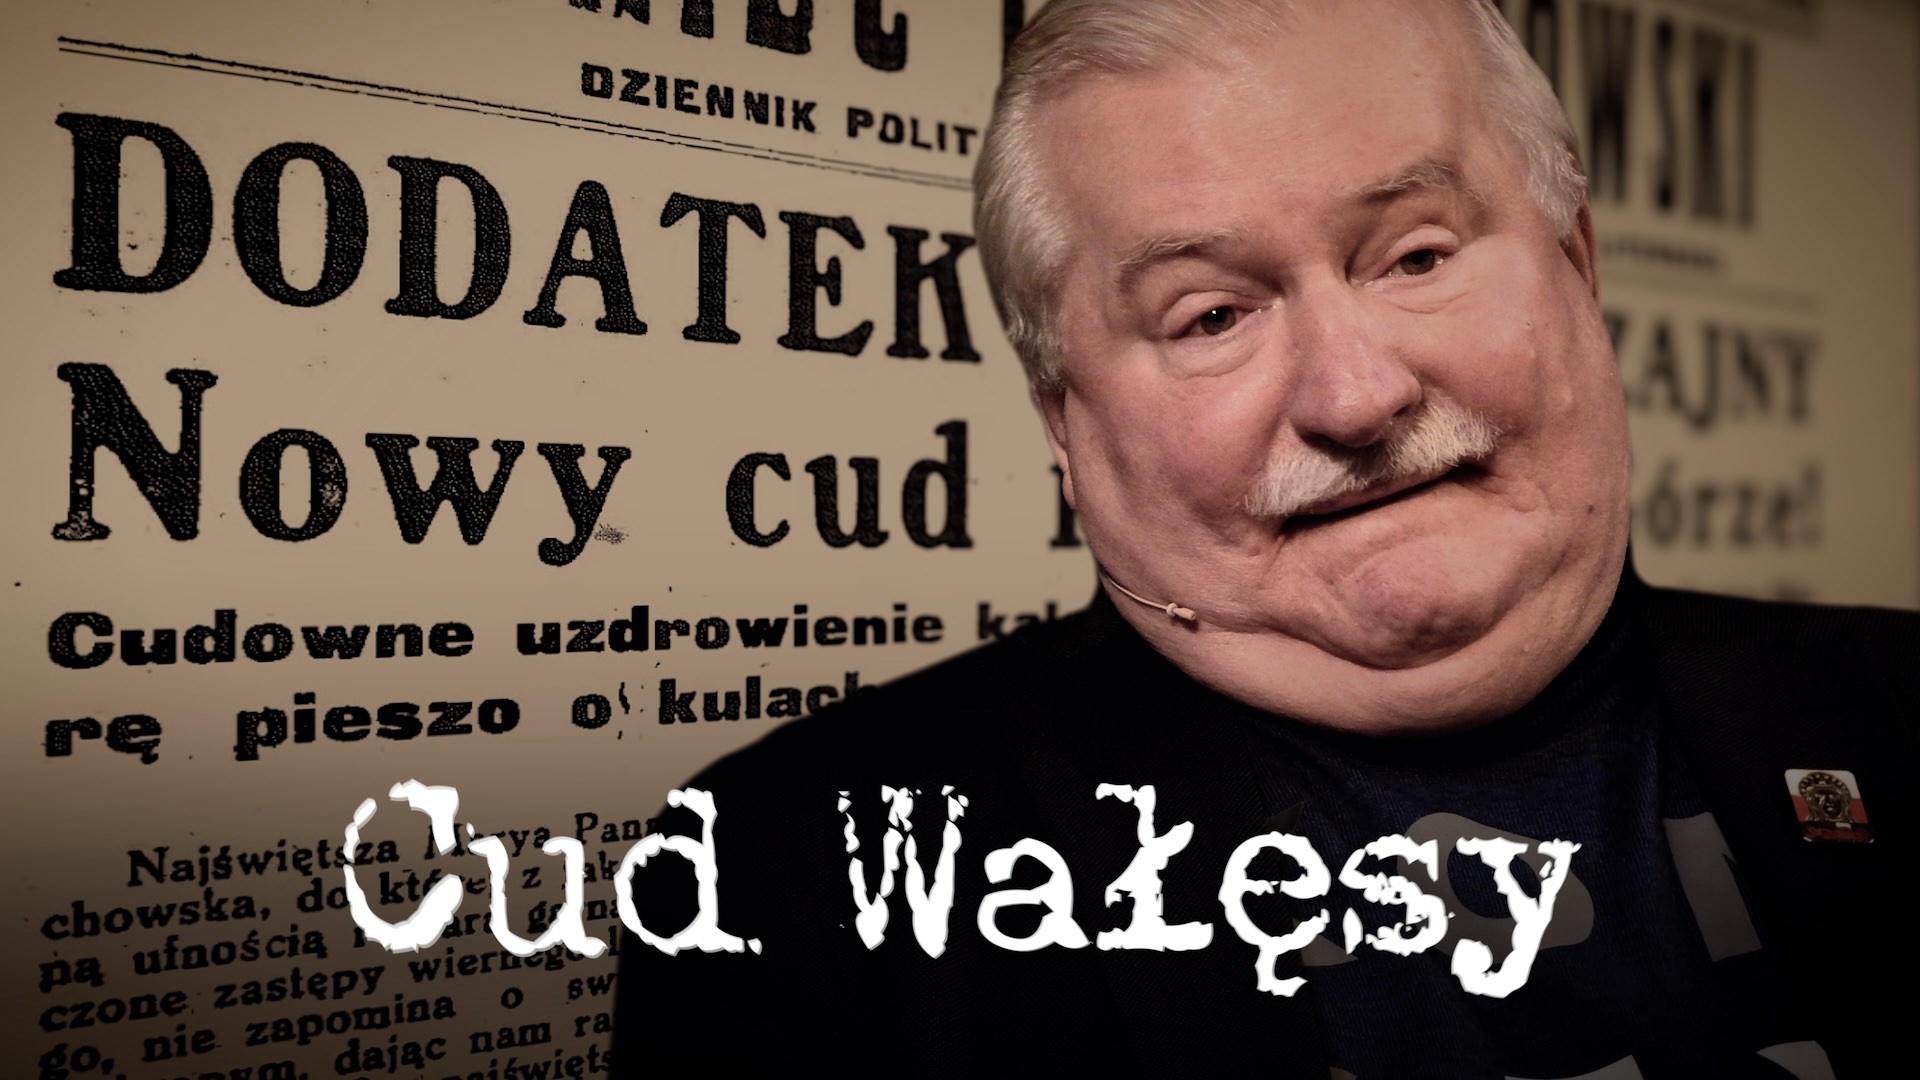 Cud Wałęsy